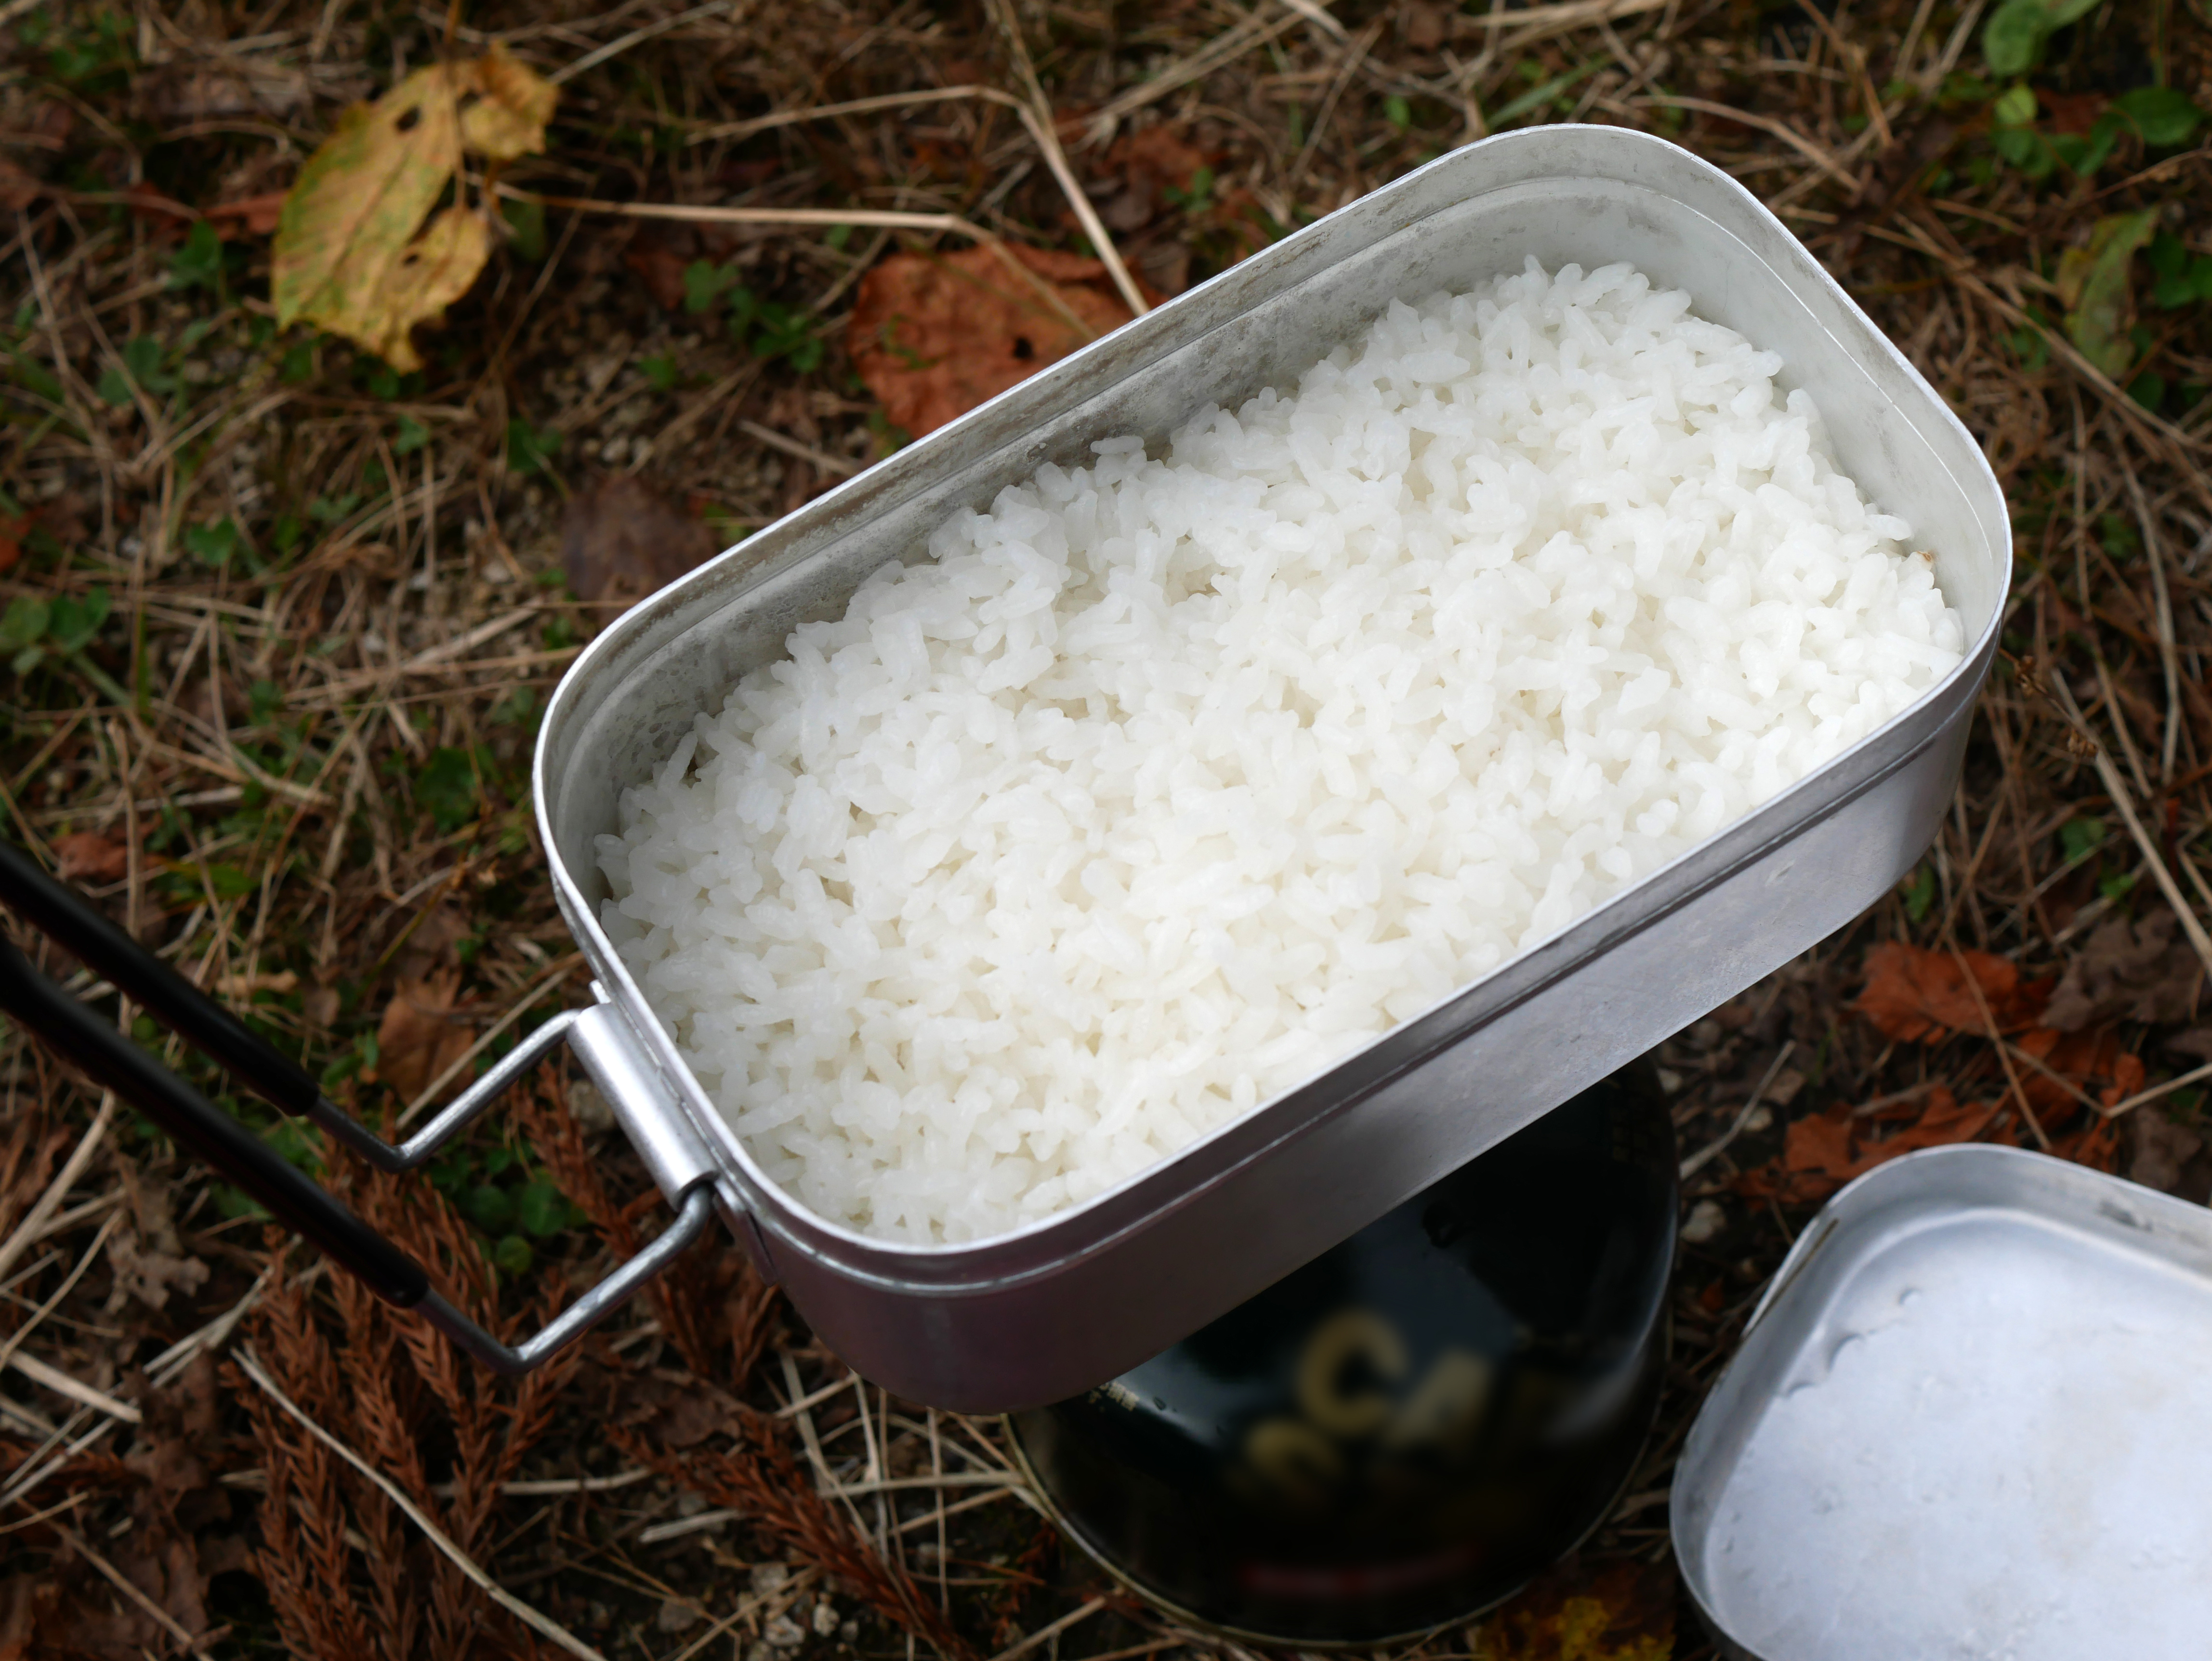 キャンプご飯 メスティンでの美味しい炊き方とおすすめのお米 ツナギのお米マガジン お米マイスター 米食味鑑定士が美味しいお米の情報をお届けするお米 マガジン